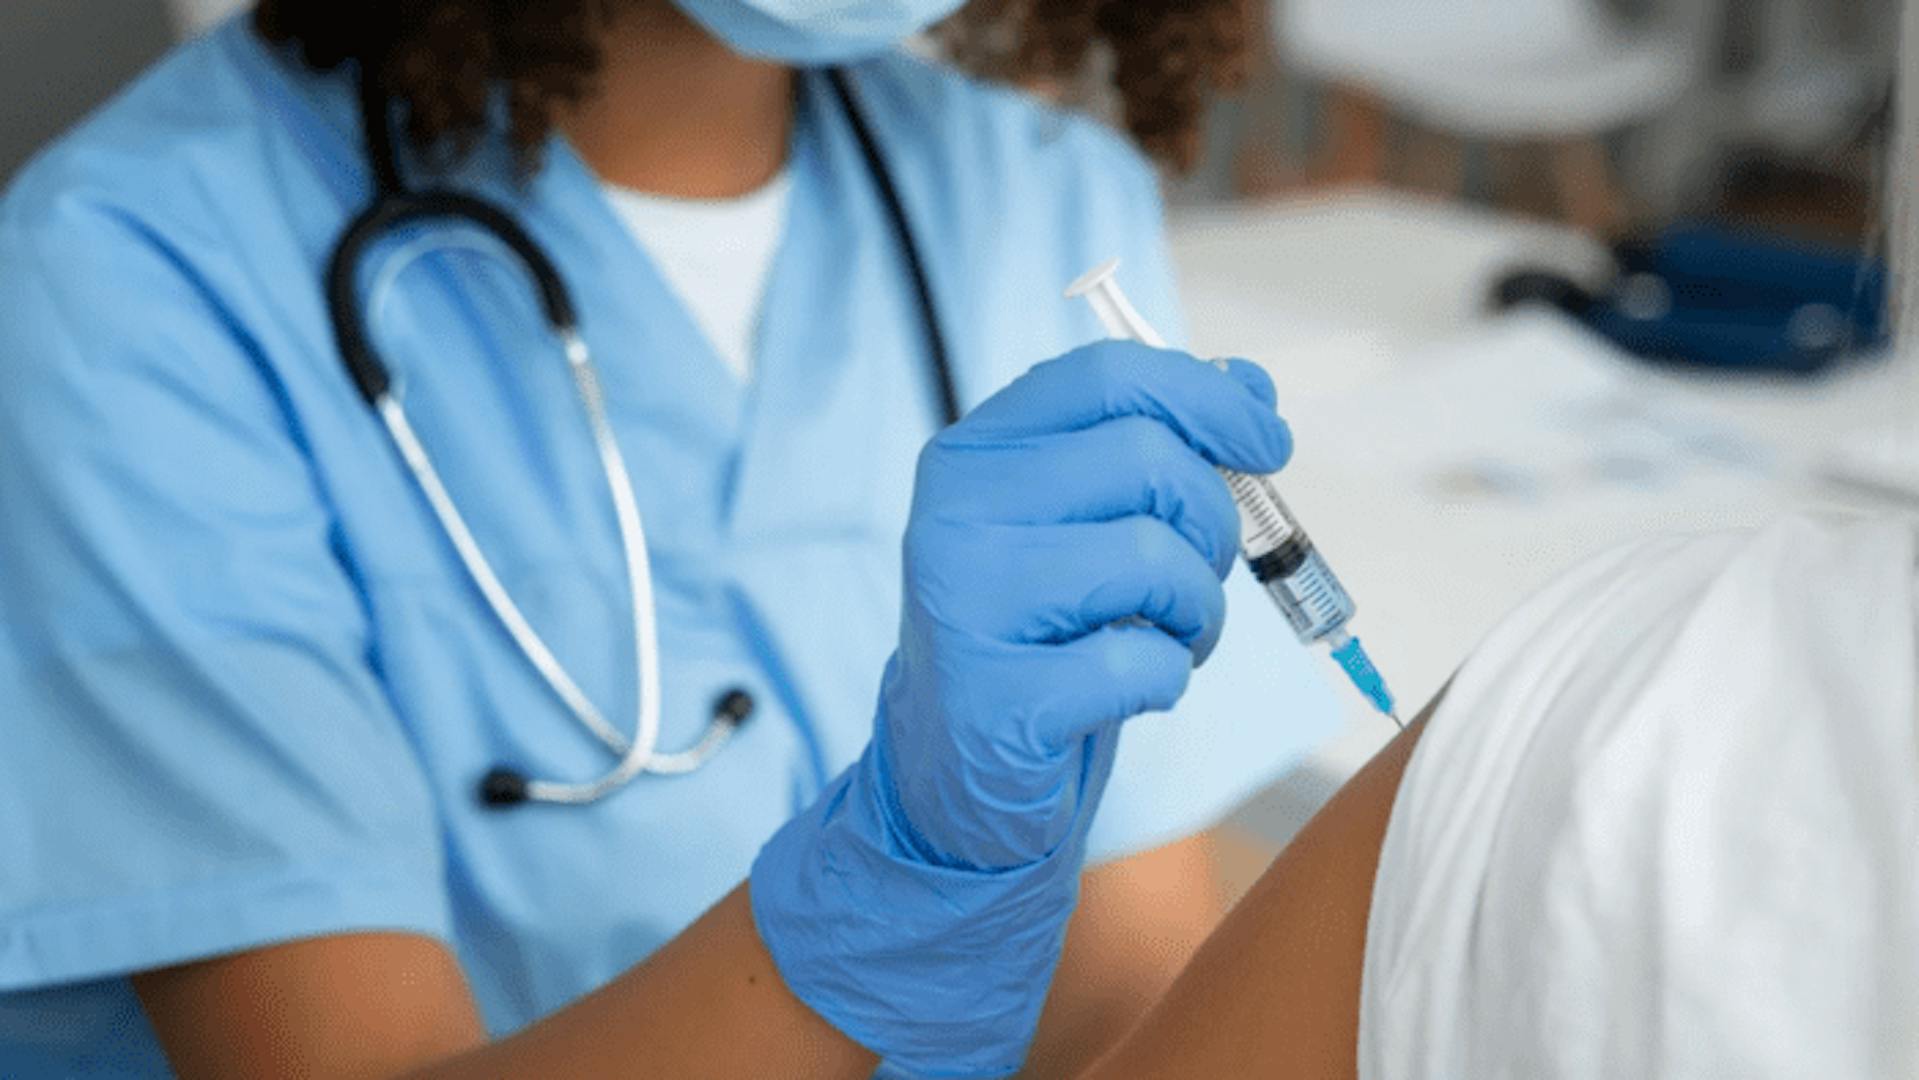 Enfermeira vestida com roupa, máscara e luvas azuis, aplica vacina em braço de paciente